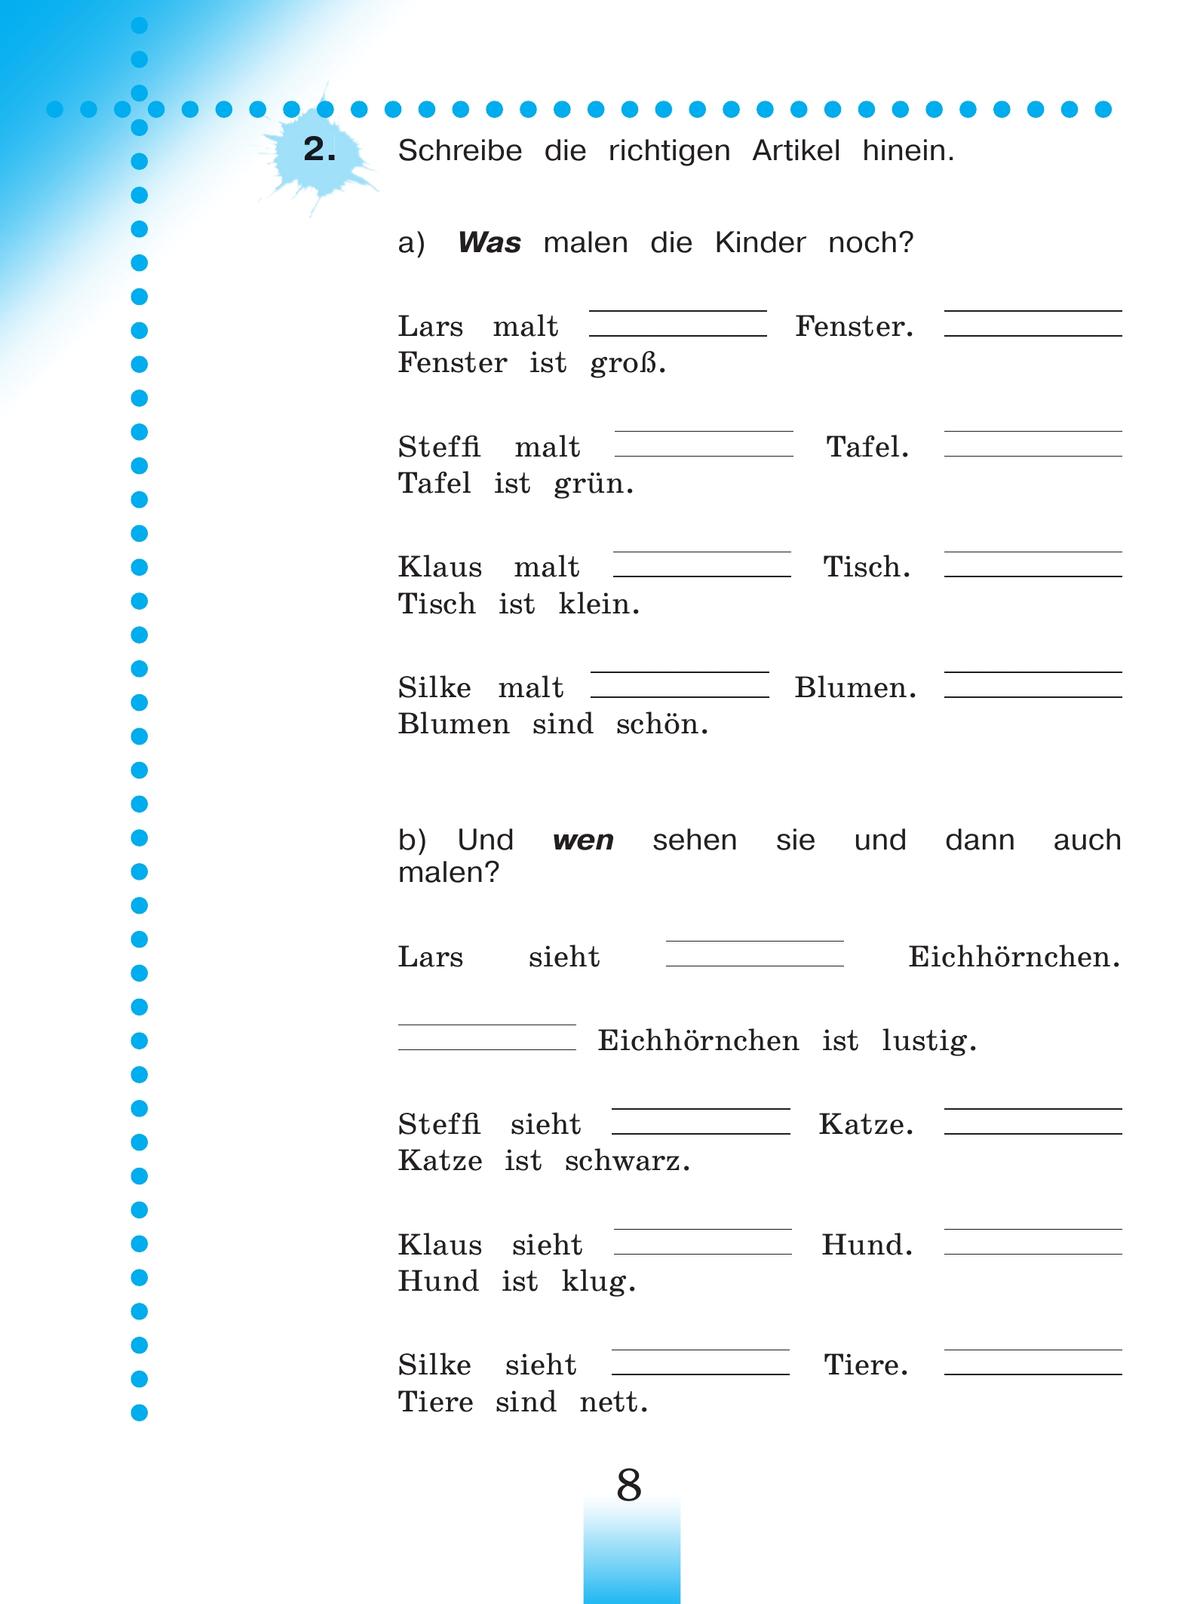 Немецкий язык. Рабочая тетрадь. 3 класс. В 2-х ч. Ч. Б 2